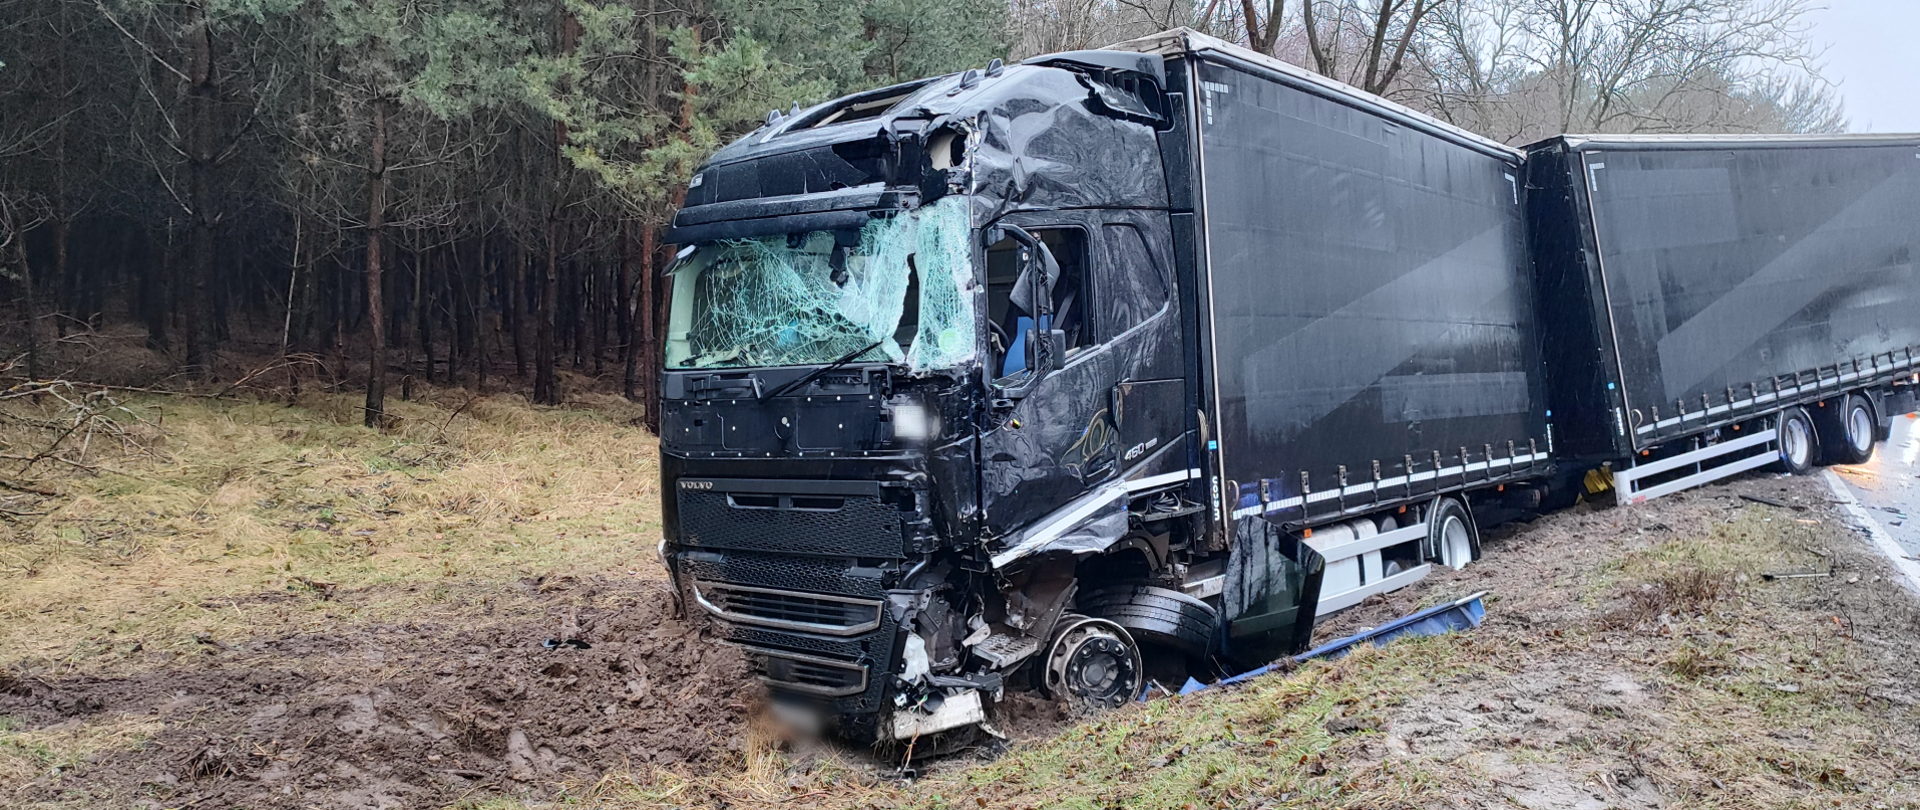 Na zdjęciu widać samochód ciężarowy z rozbitą kabiną, znajdujący się poza pasem jezdni 